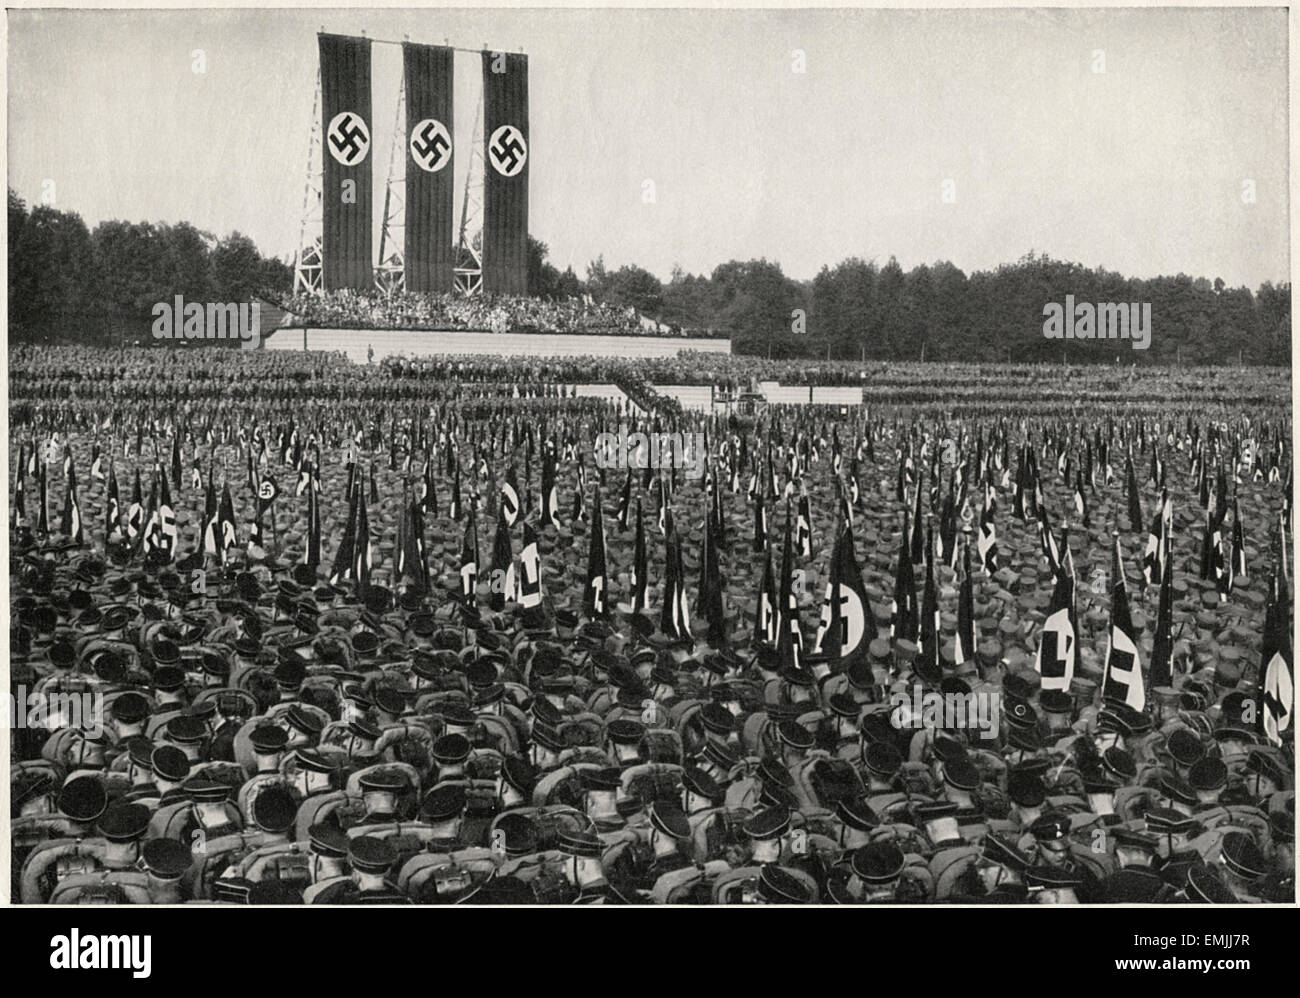 La société allemande troupes lors du rallye, Nuremberg, Allemagne, 1933 Banque D'Images